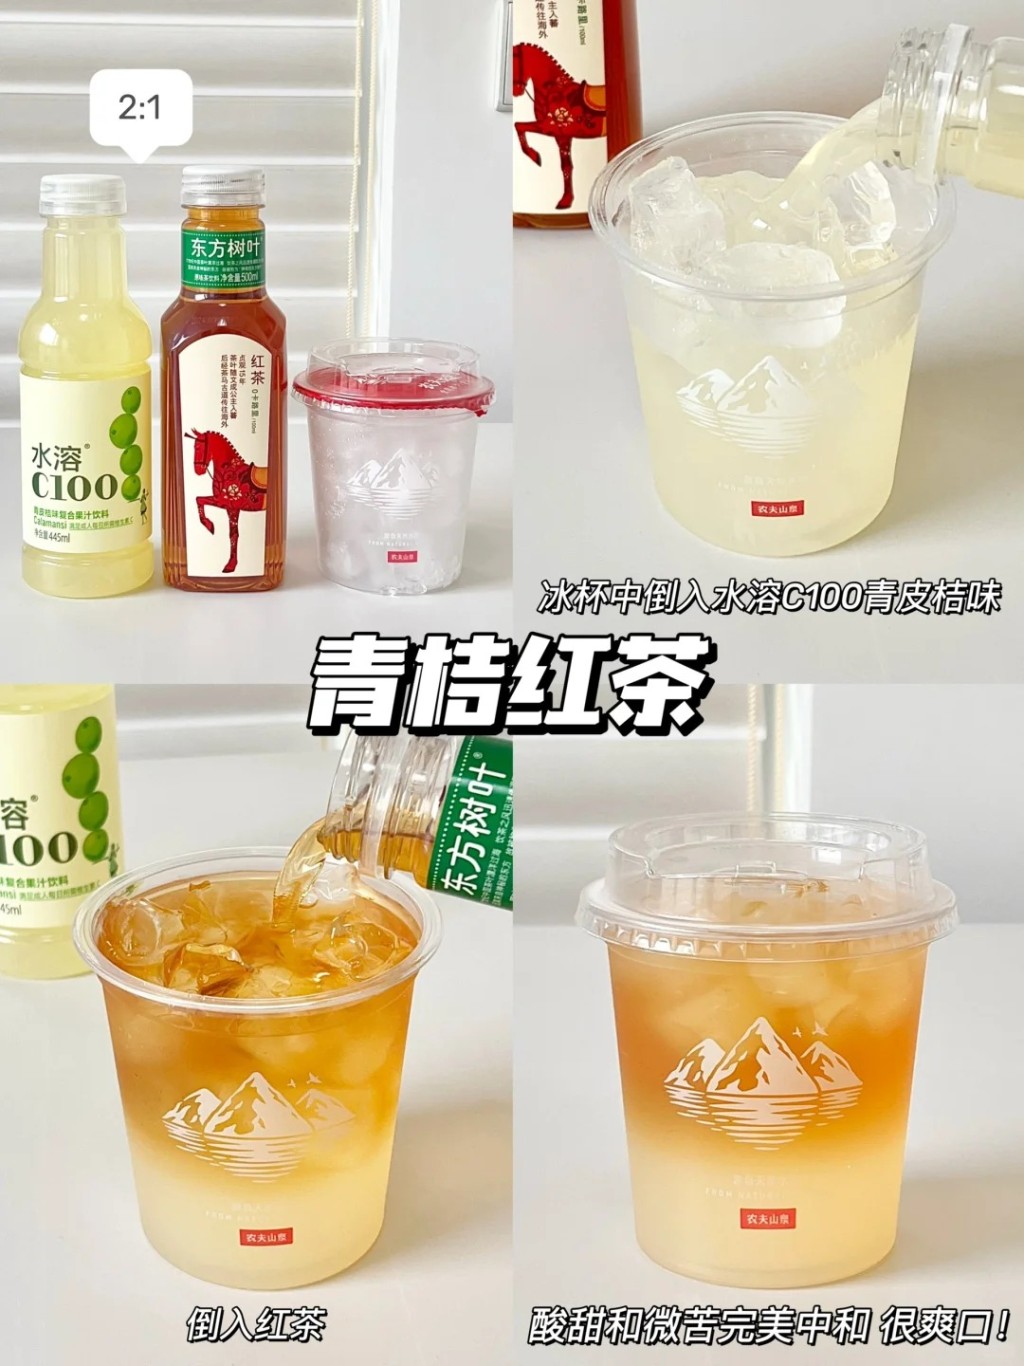 内地社交平台有许多网民分享用“冰杯”调制消暑饮品的方法。